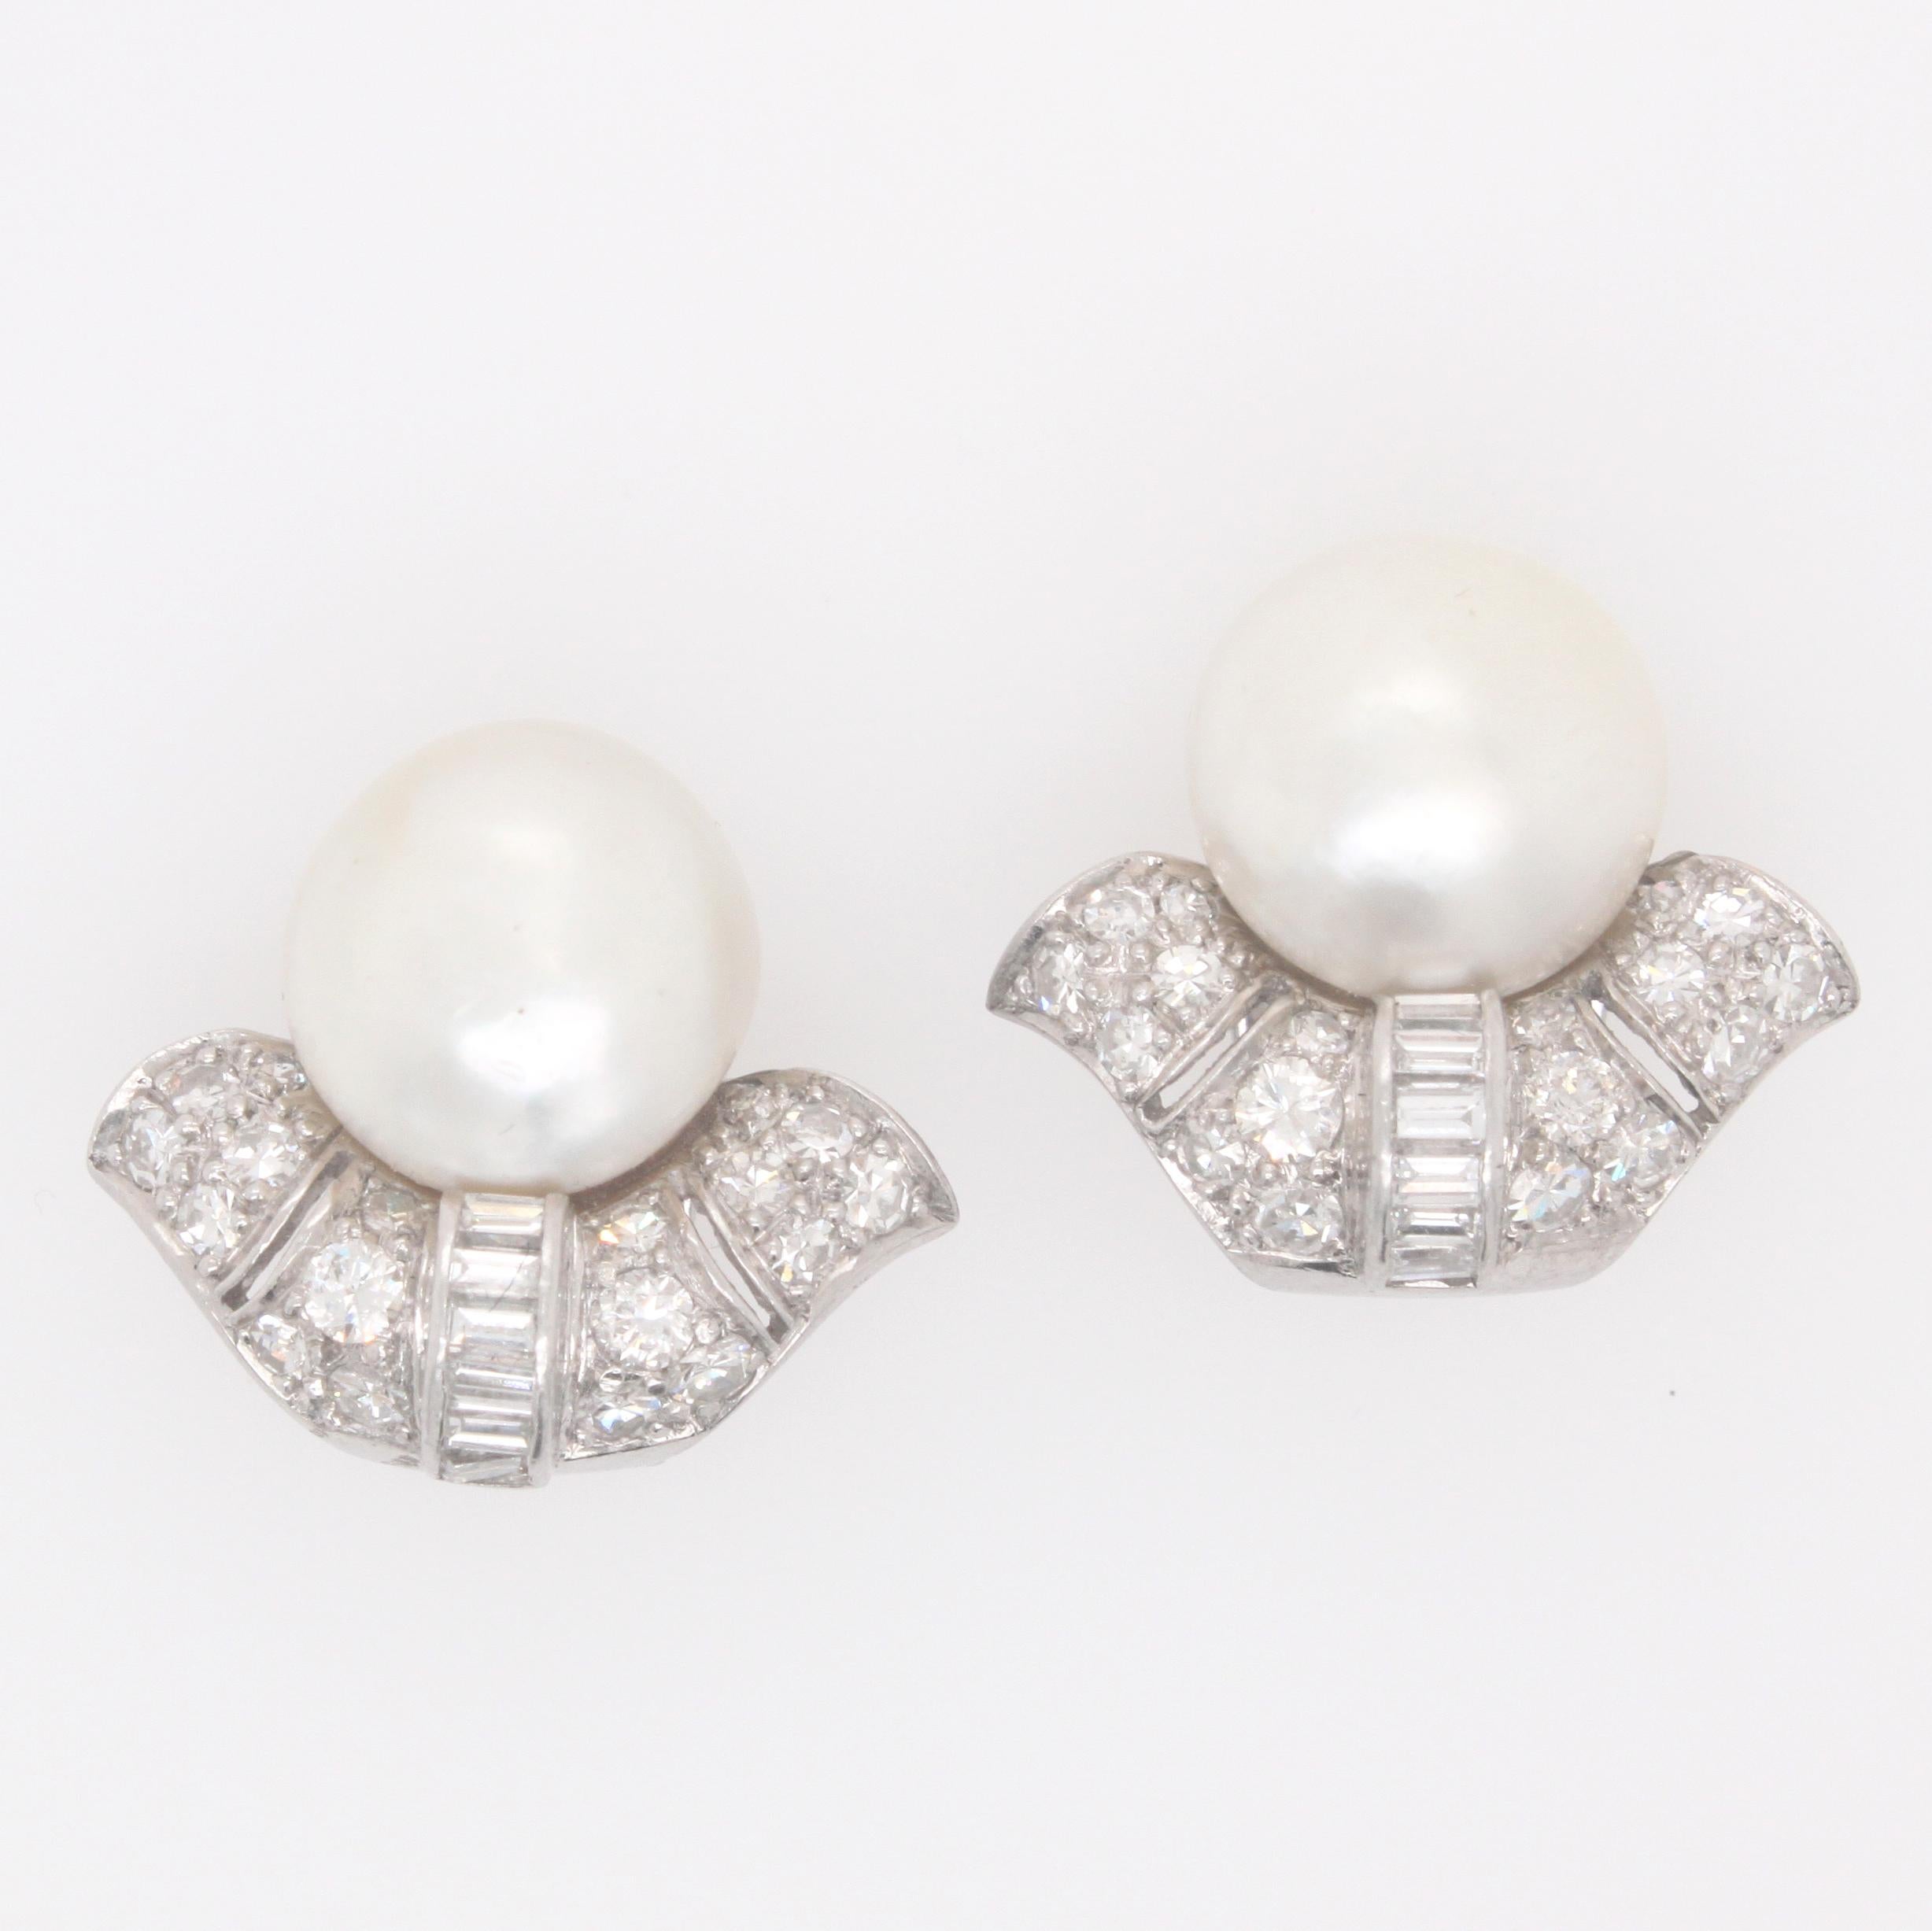 1920s earrings